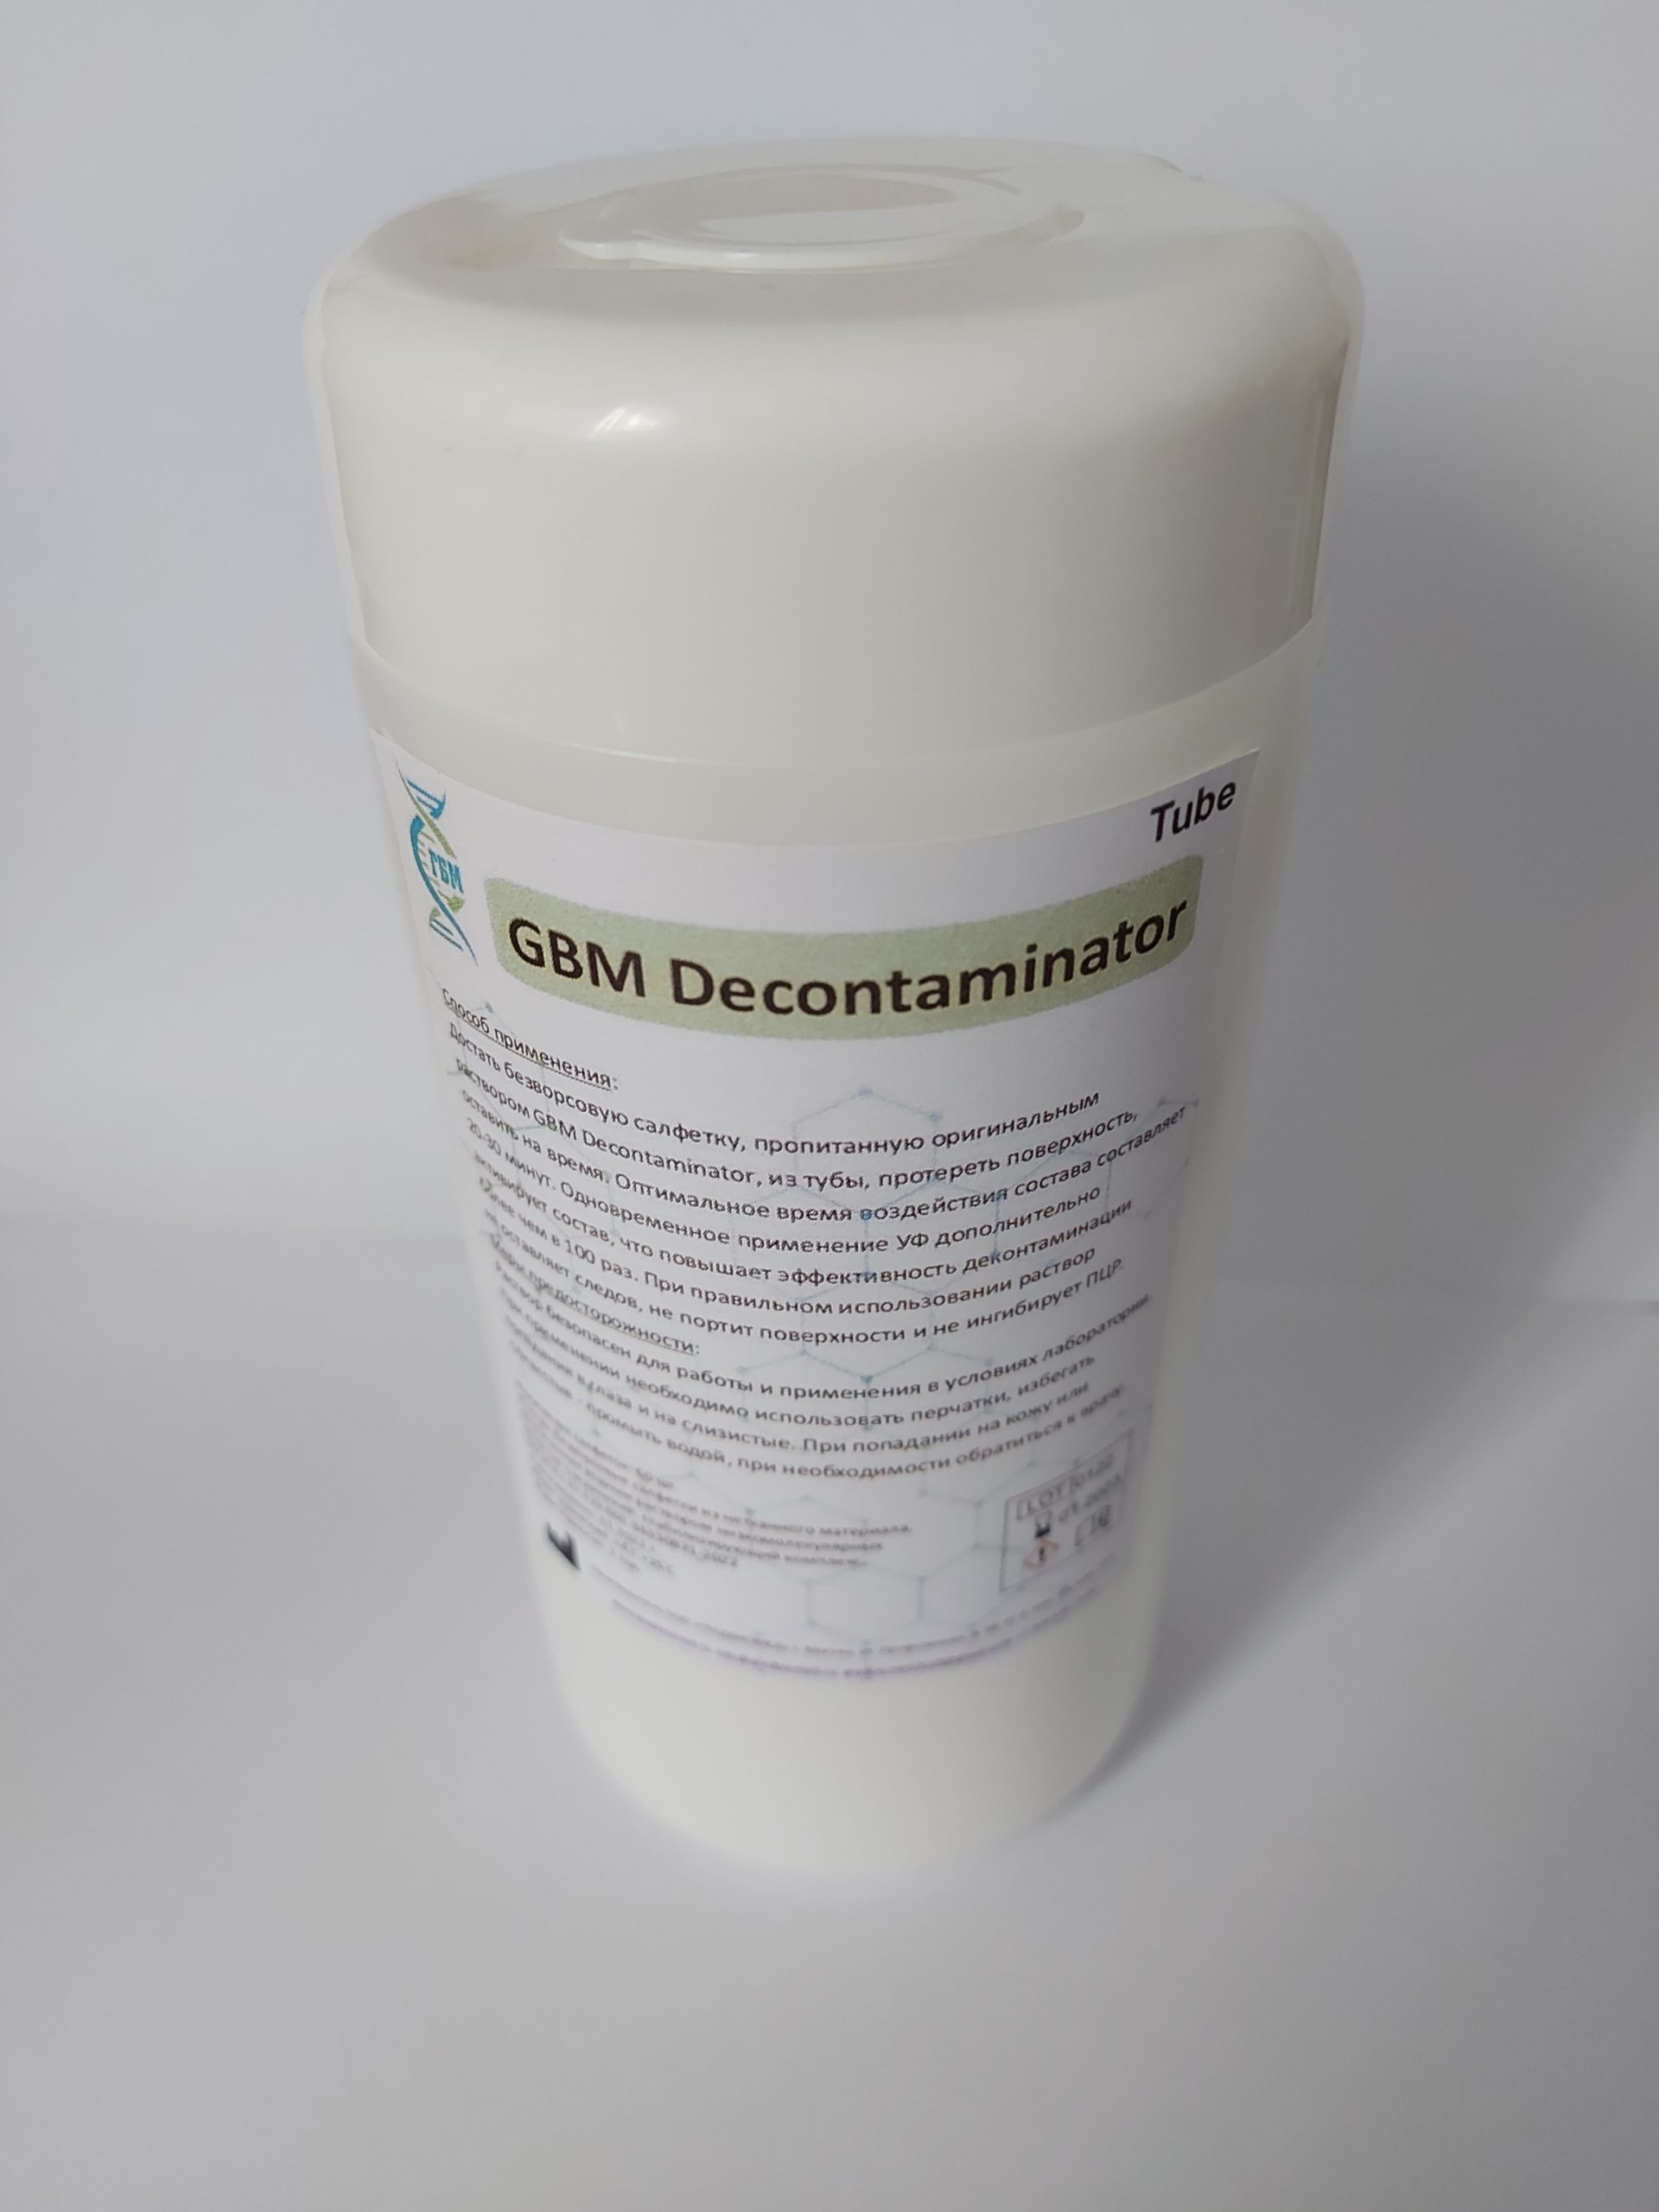 Салфетки GRADBIOMED® для глубокой очистки поверхностей<br>GBM Decontaminator Tube